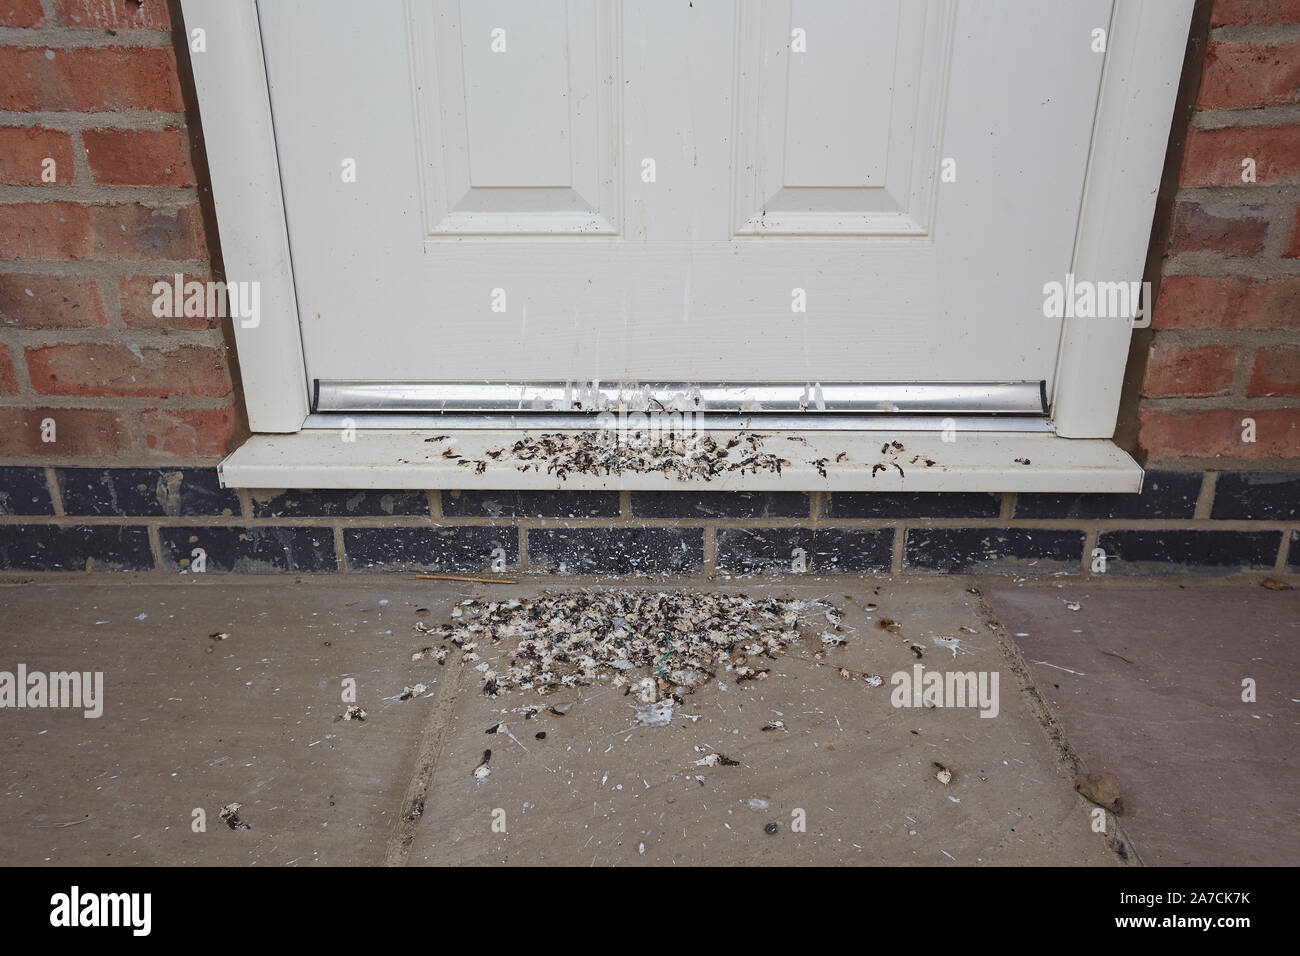 Excrementos de aves en la puerta delantera, Inglaterra, Reino Unido. Foto de stock